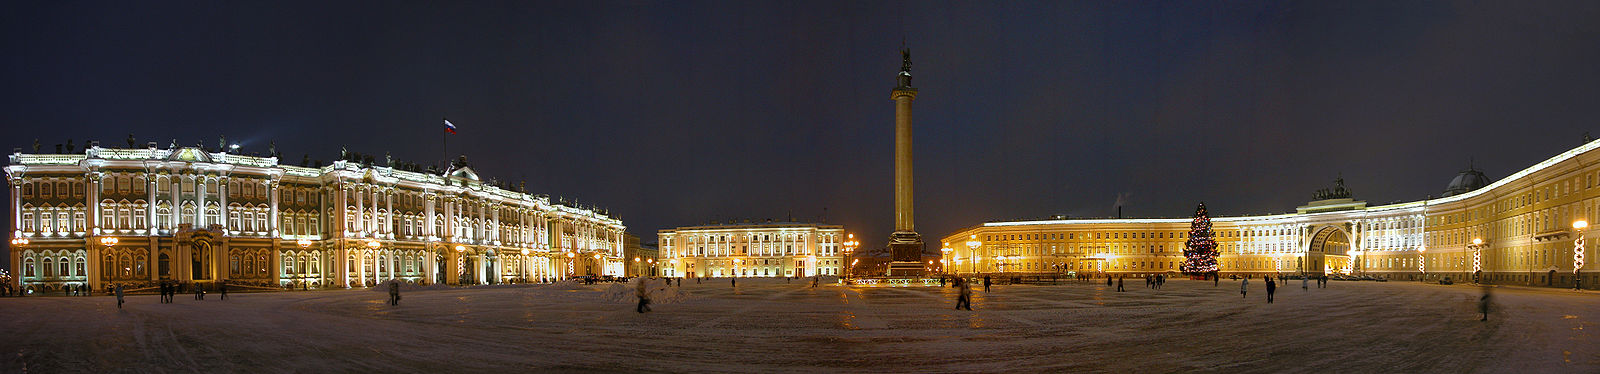 Der Palastplatz bei Nacht